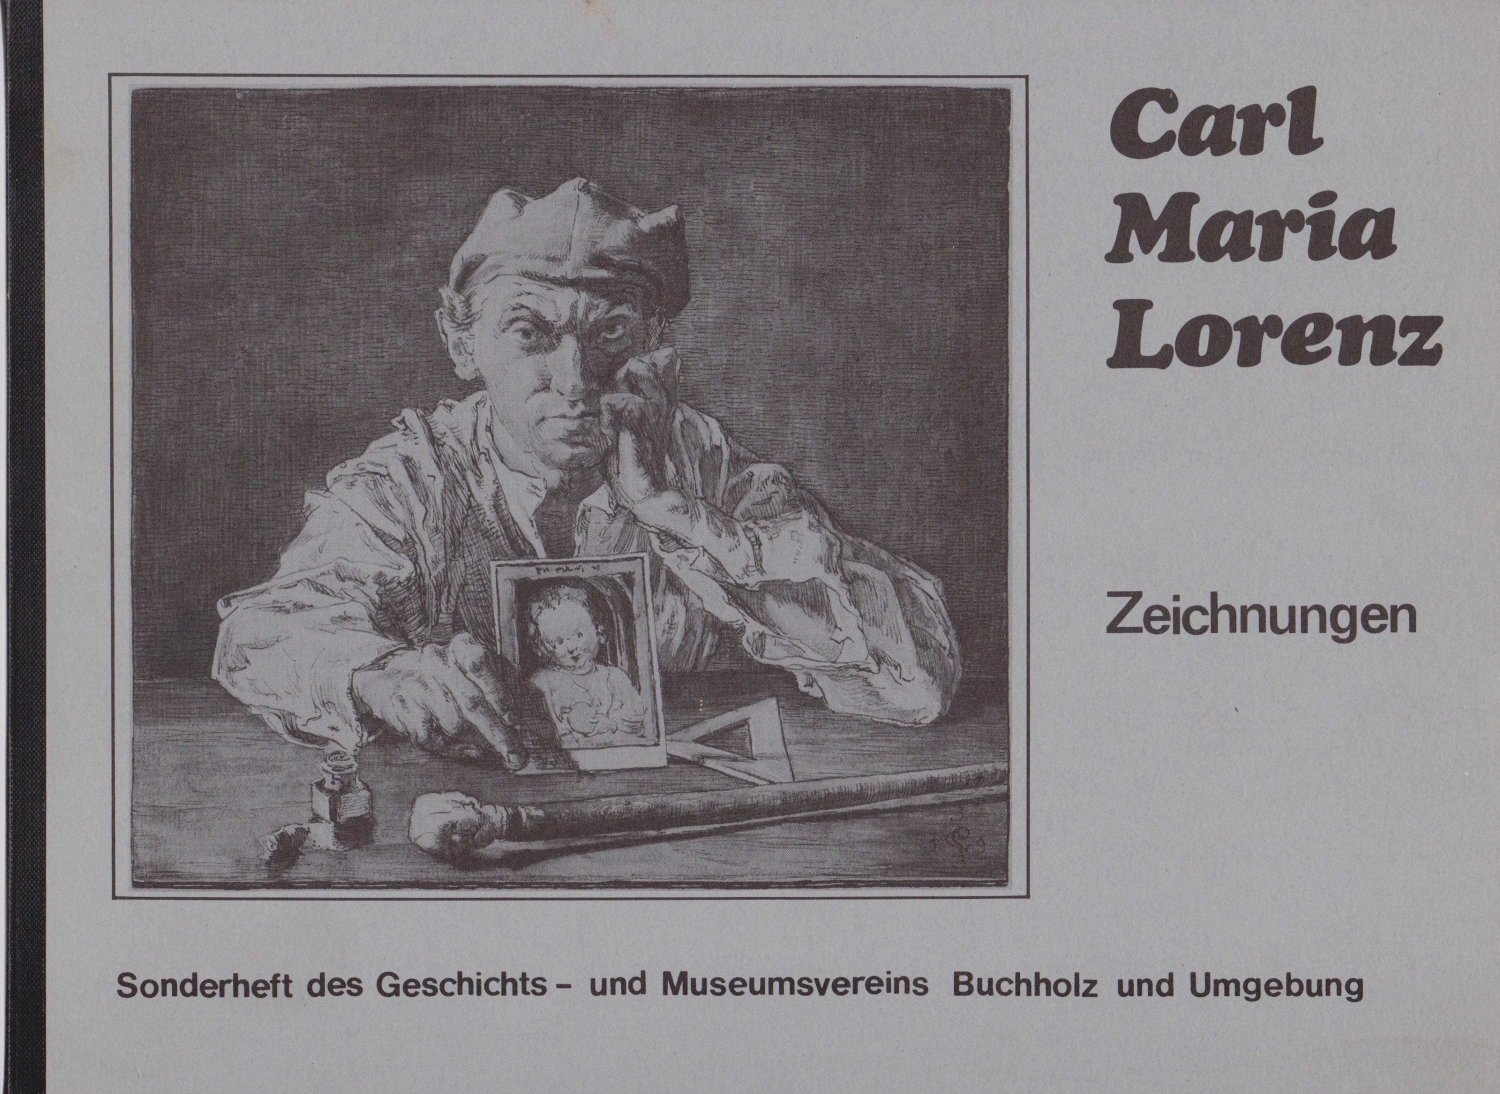 LORENZ, Carl Maria:  Carl Maria Lorenz. Zeichnungen. Sonderheft des Geschichts- und Museumsvereins Buchholz und Umgebung. 